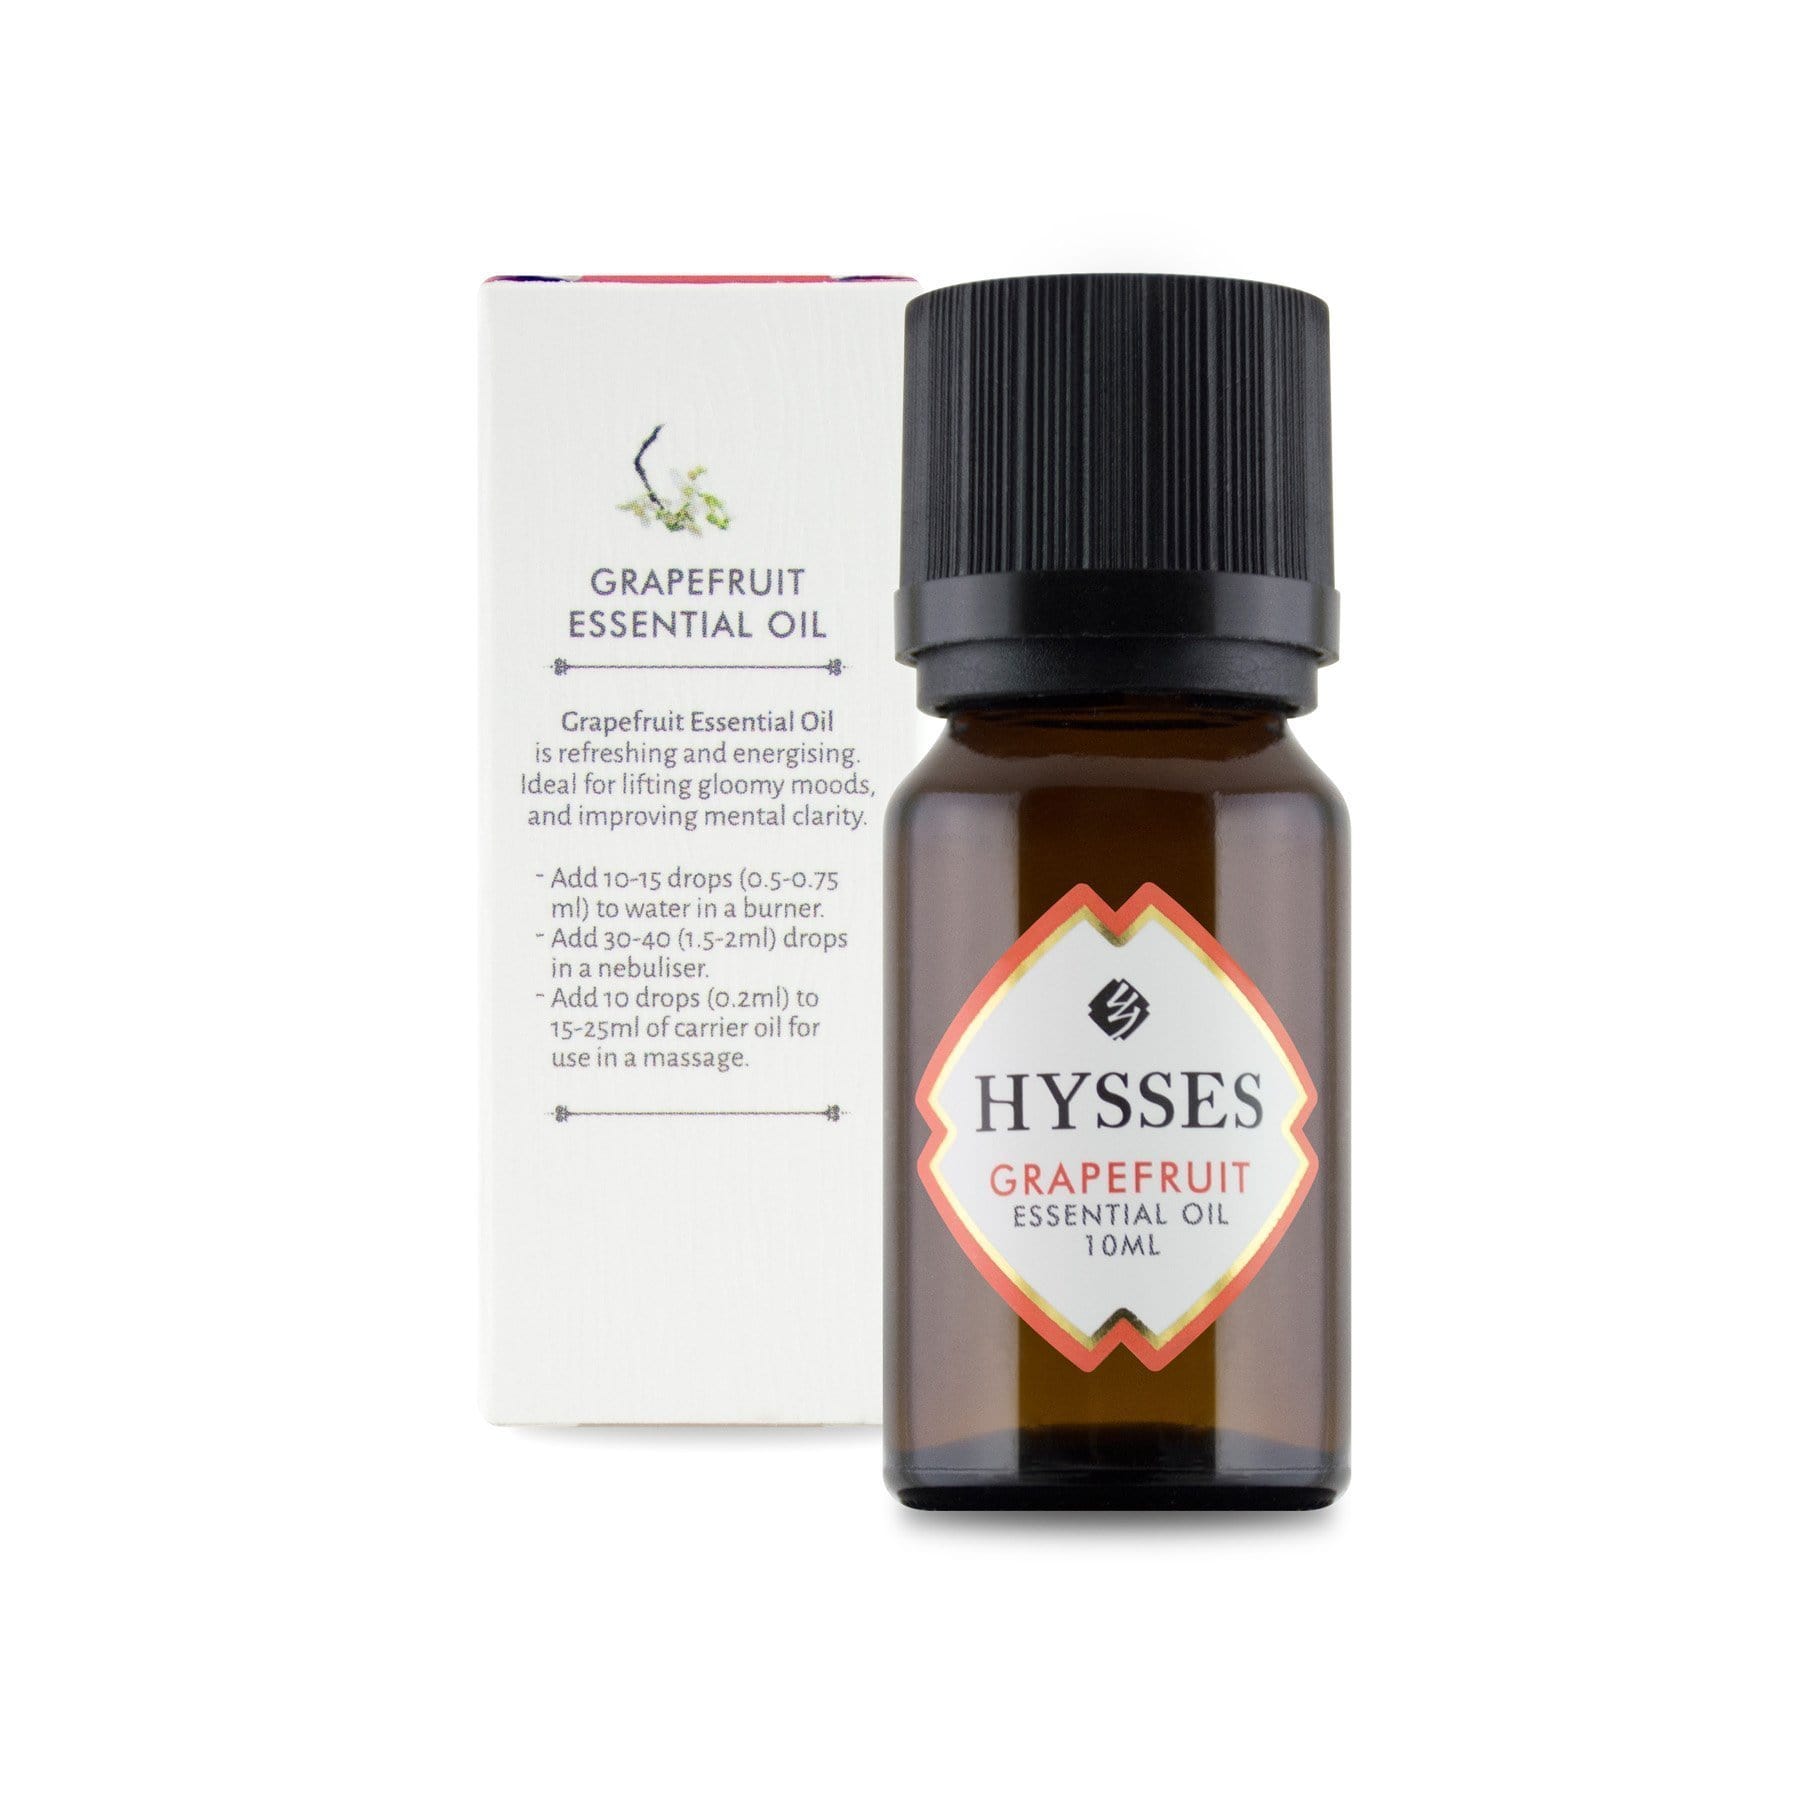 Hysses Essential Oil 100ml Essential Oil Grapefruit, 100ml